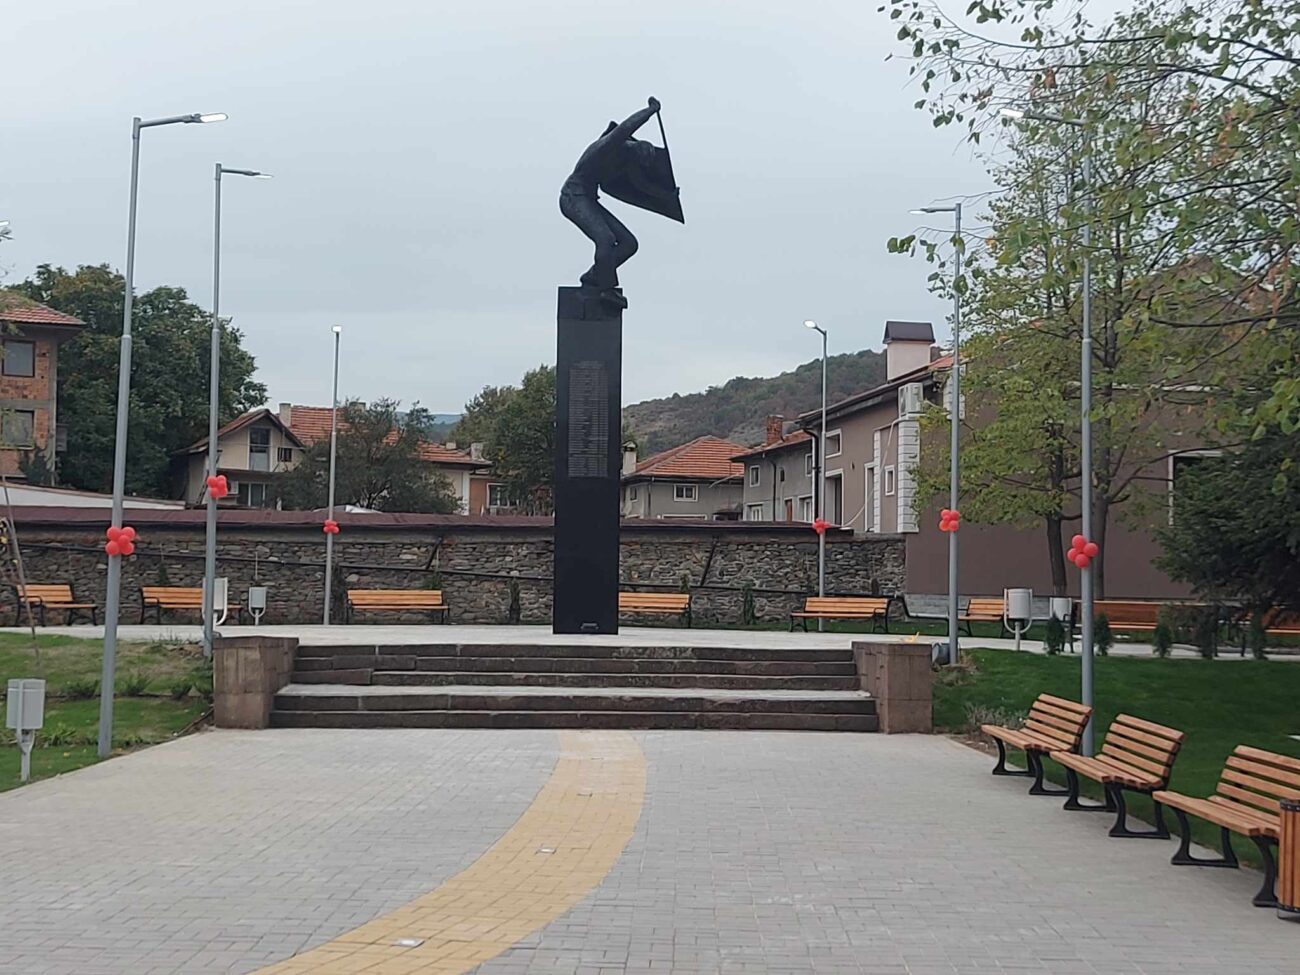 Откриха новия площад в село Първенец, пеещият фонтан се превърна в атракция (СНИМКИ)